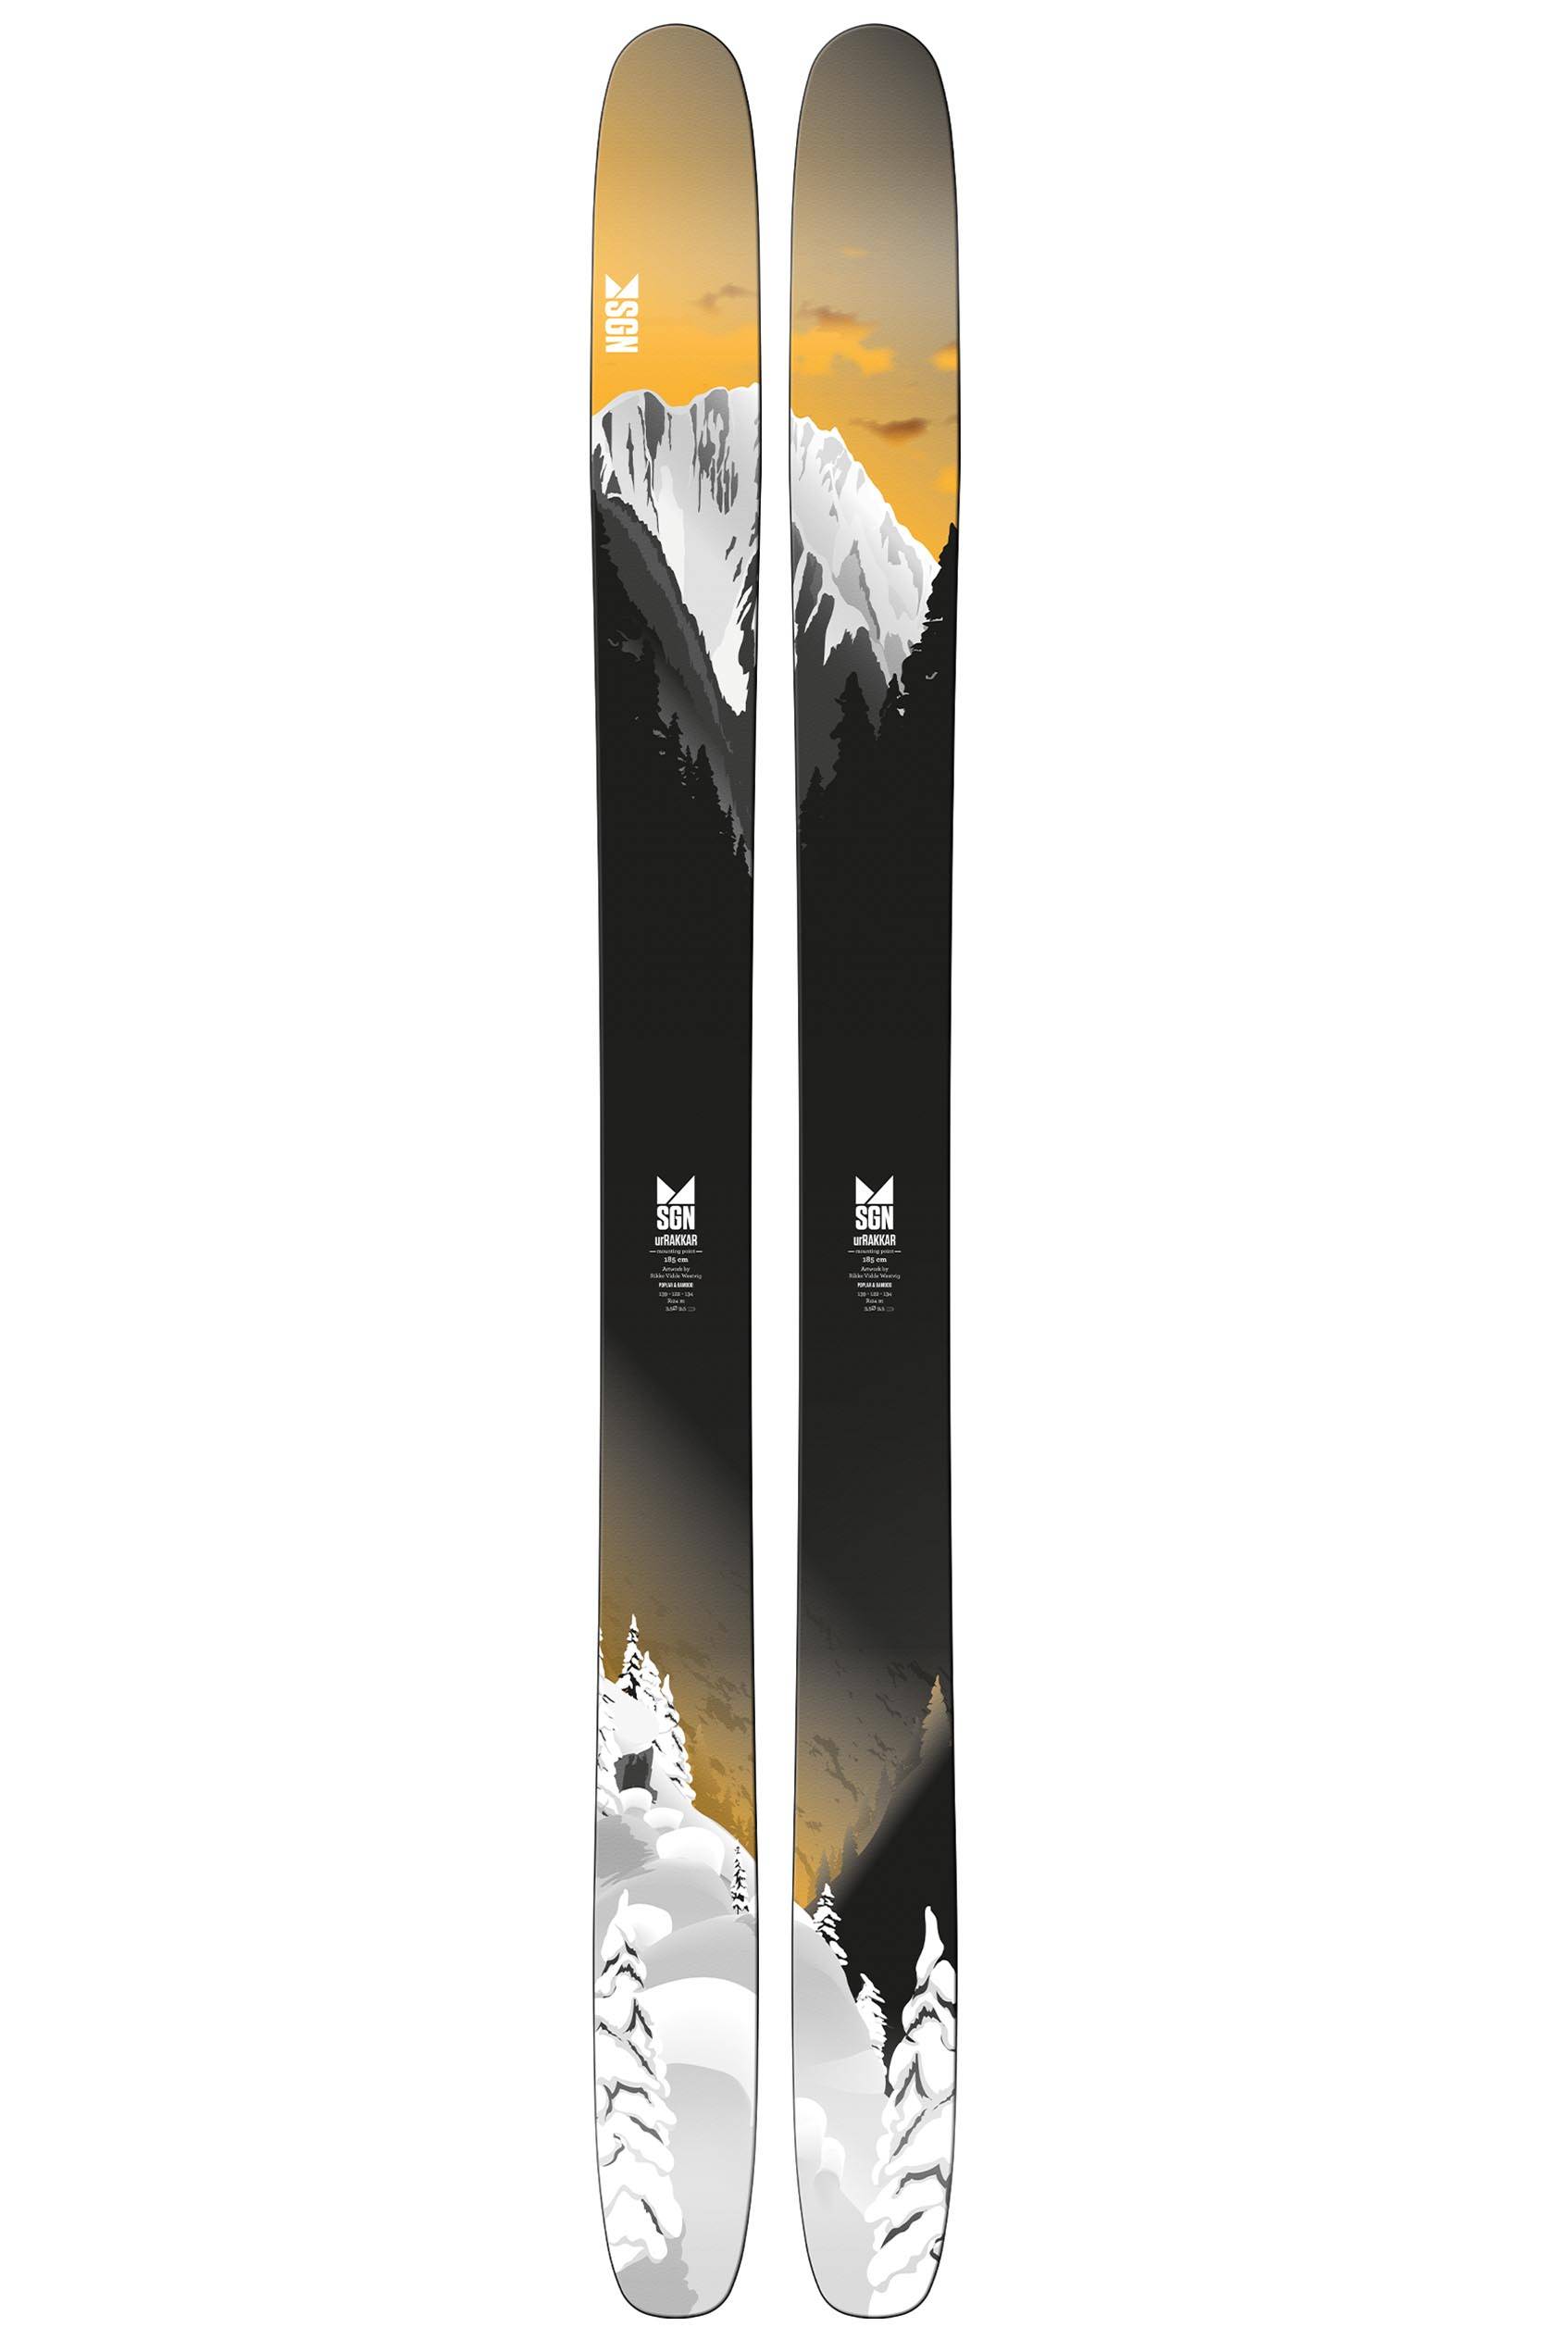 SGN skis urRakkar pudderski 21/22  185 cm 2021